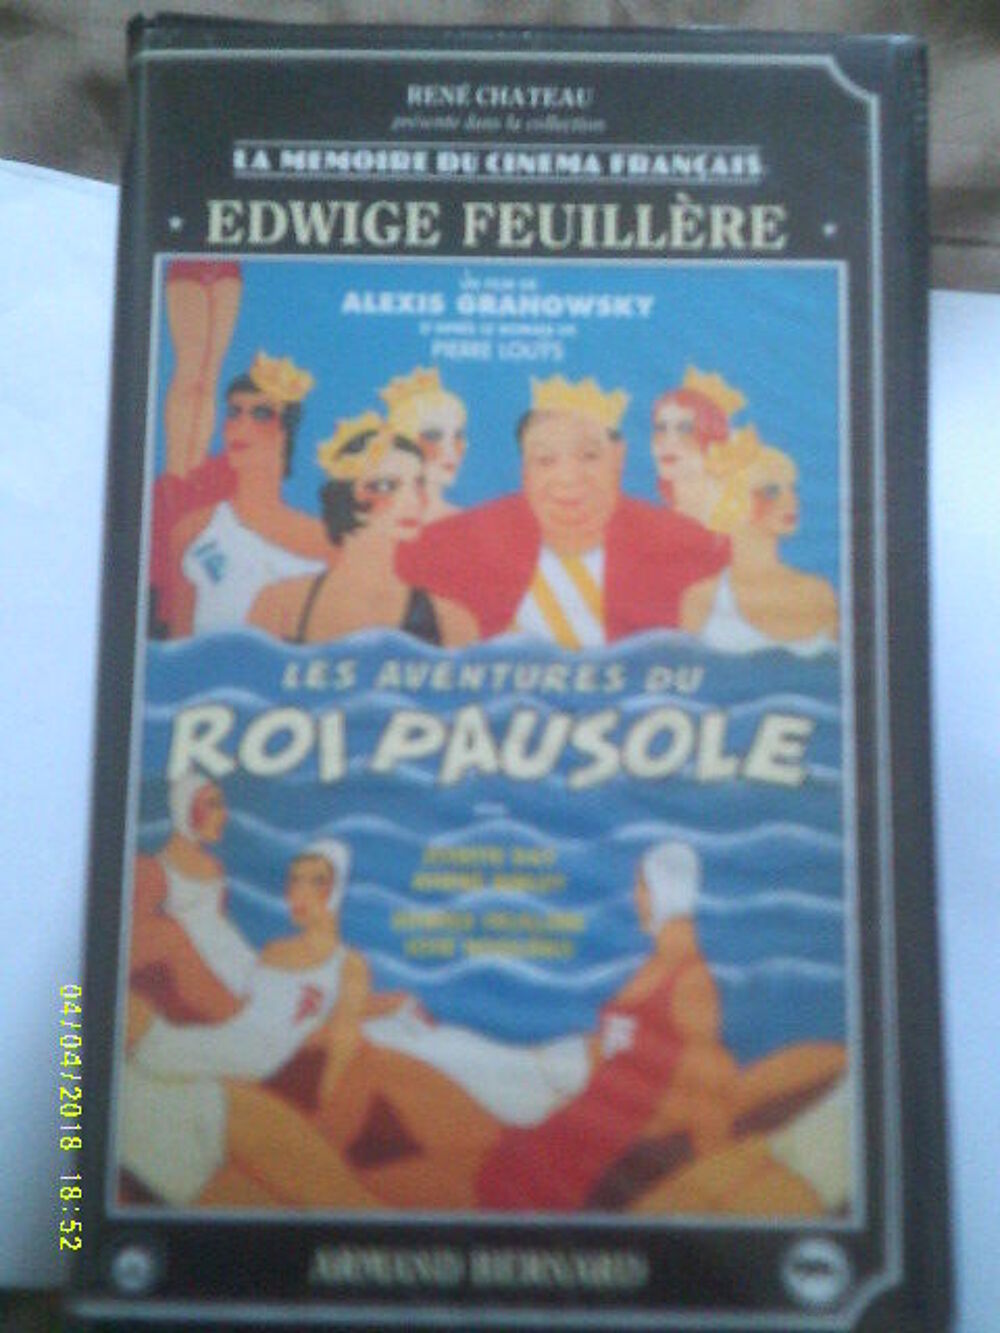 Les Aventures Roi PAUSOLE film (1934) avec edwige feuillere DVD et blu-ray